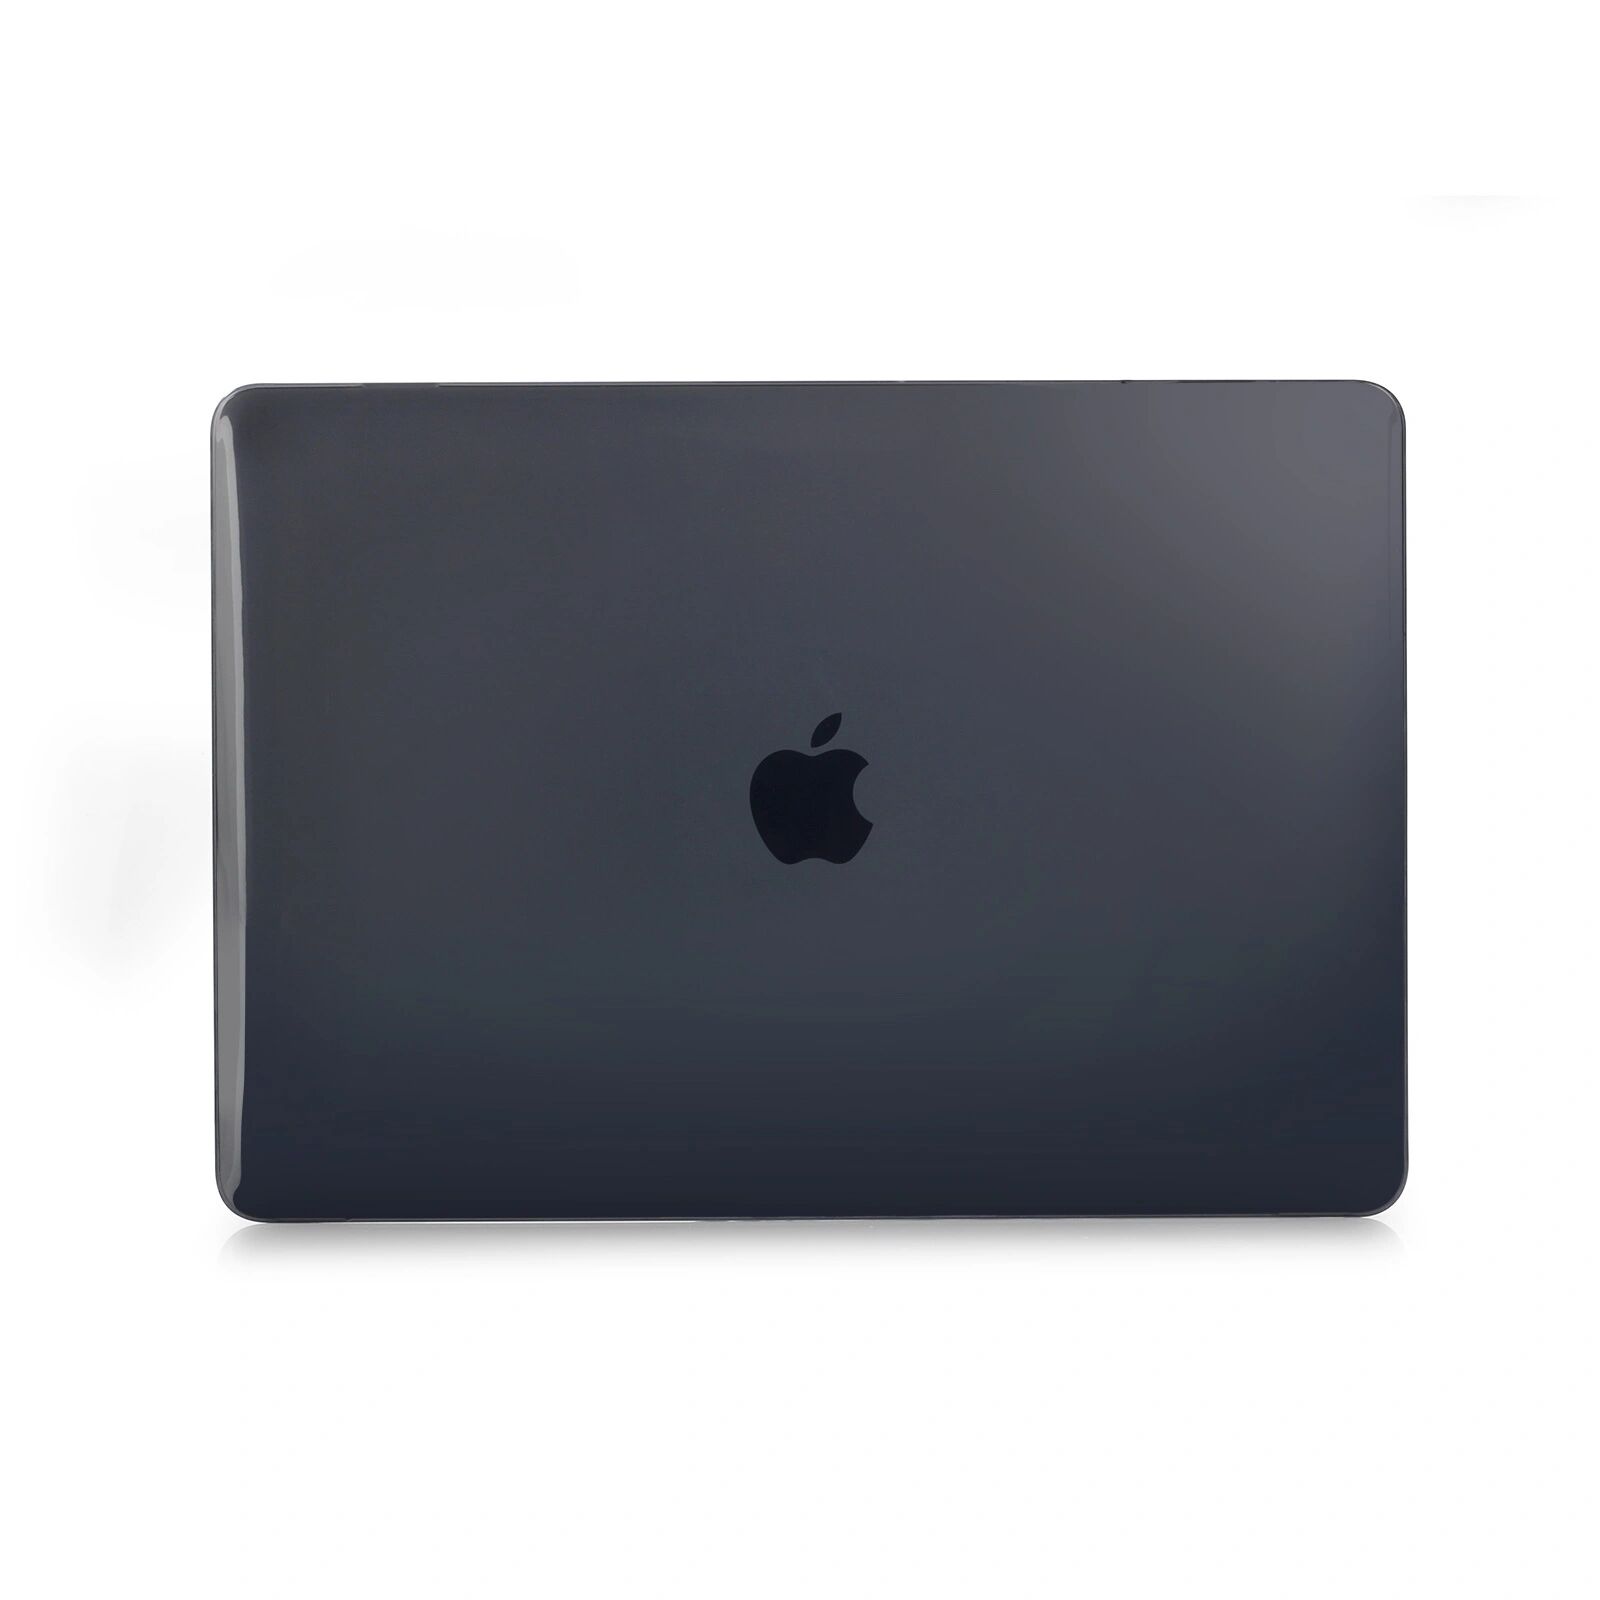 iPouzdro.cz Ochranný kryt na MacBook 12 - Crystal Black